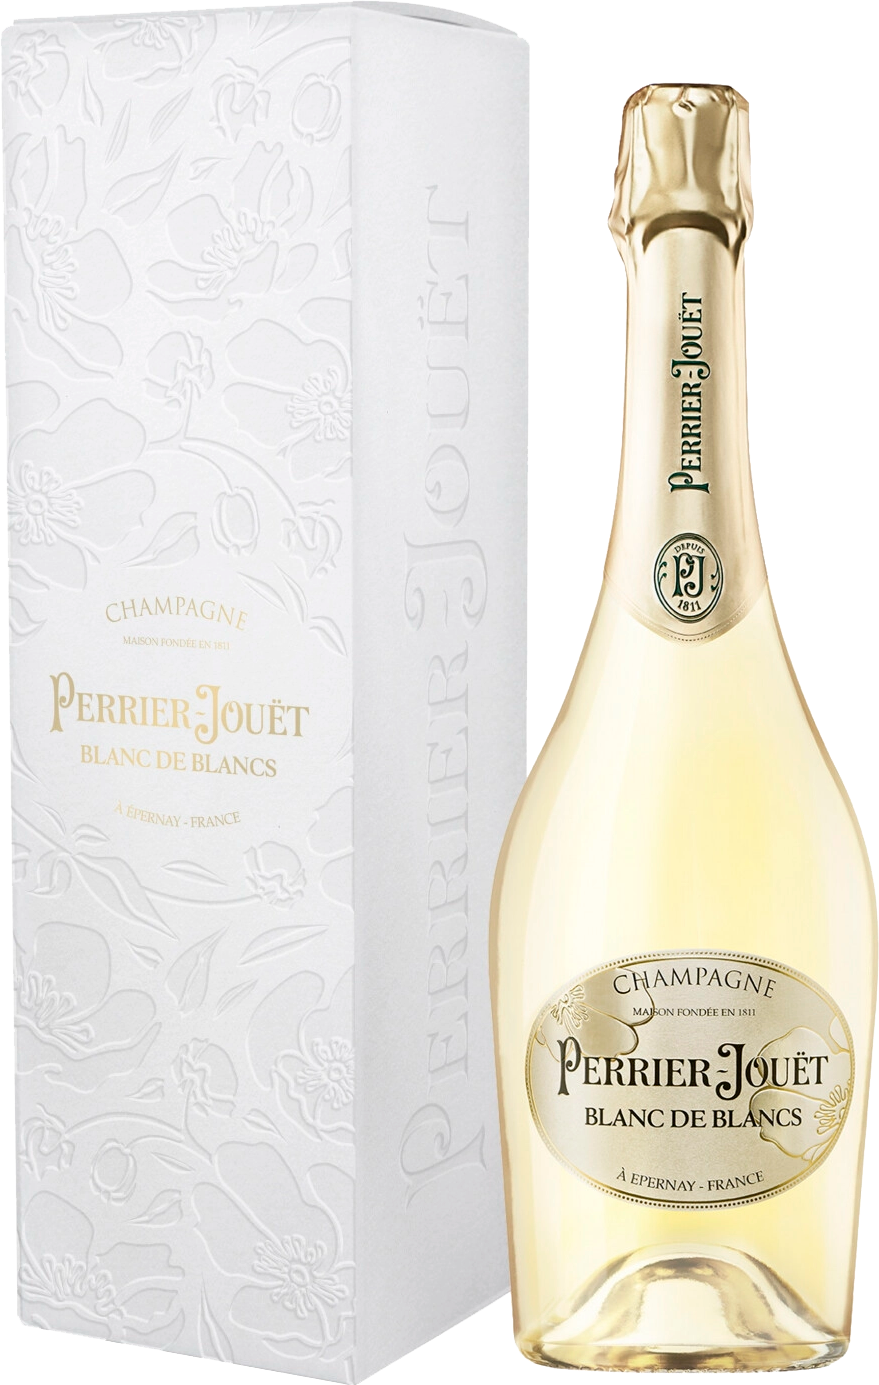 Perrier-Jouёt Blanc de Blancs Brut Champagne AOC ayala blanc de blancs brut champagne aoc gift box